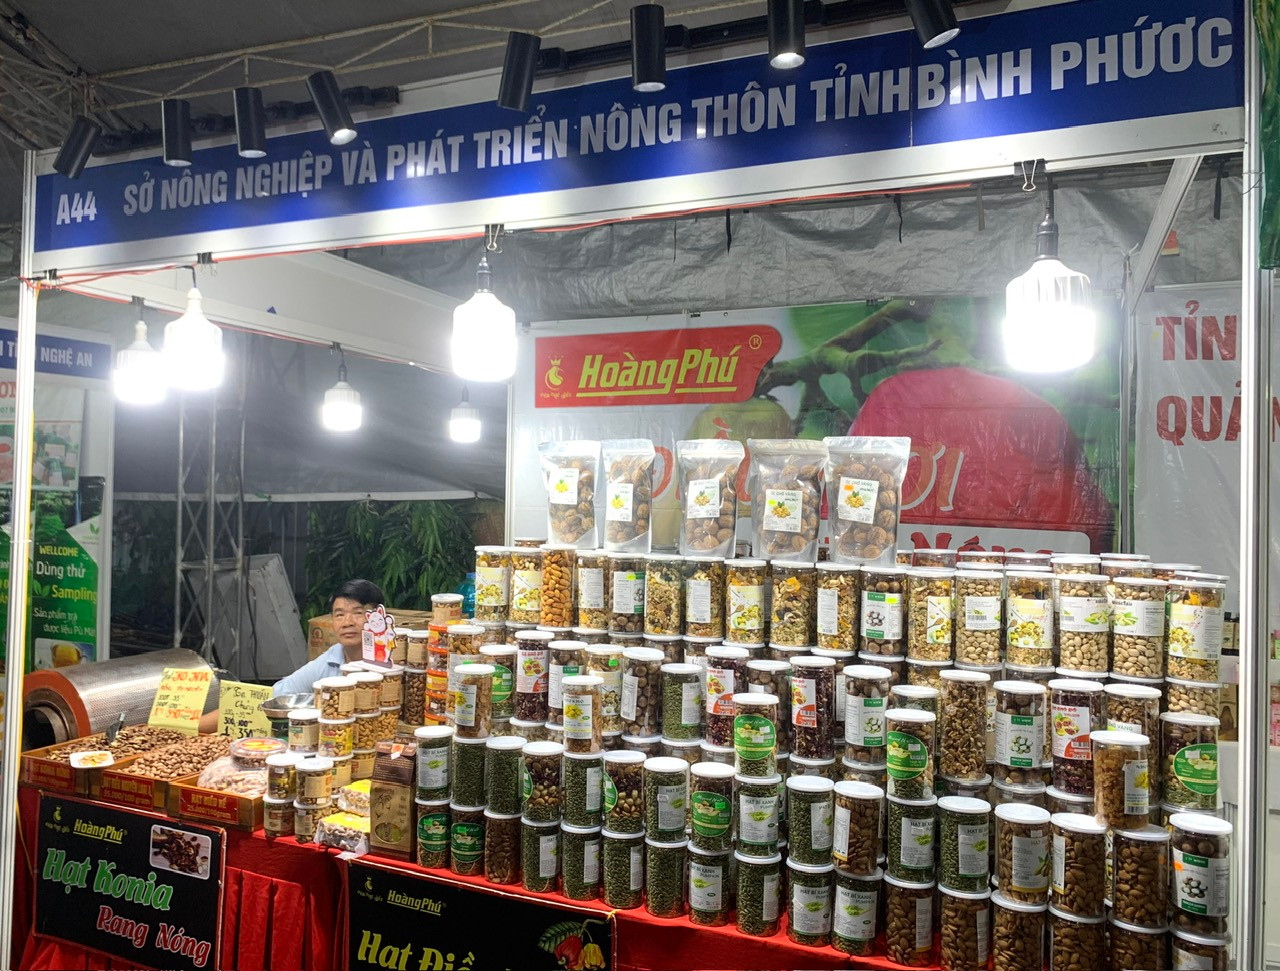 Gian hàng giới thiệu sản phẩm nông nghiệp của tỉnh Bình Phước. (Ảnh: V.Phong)